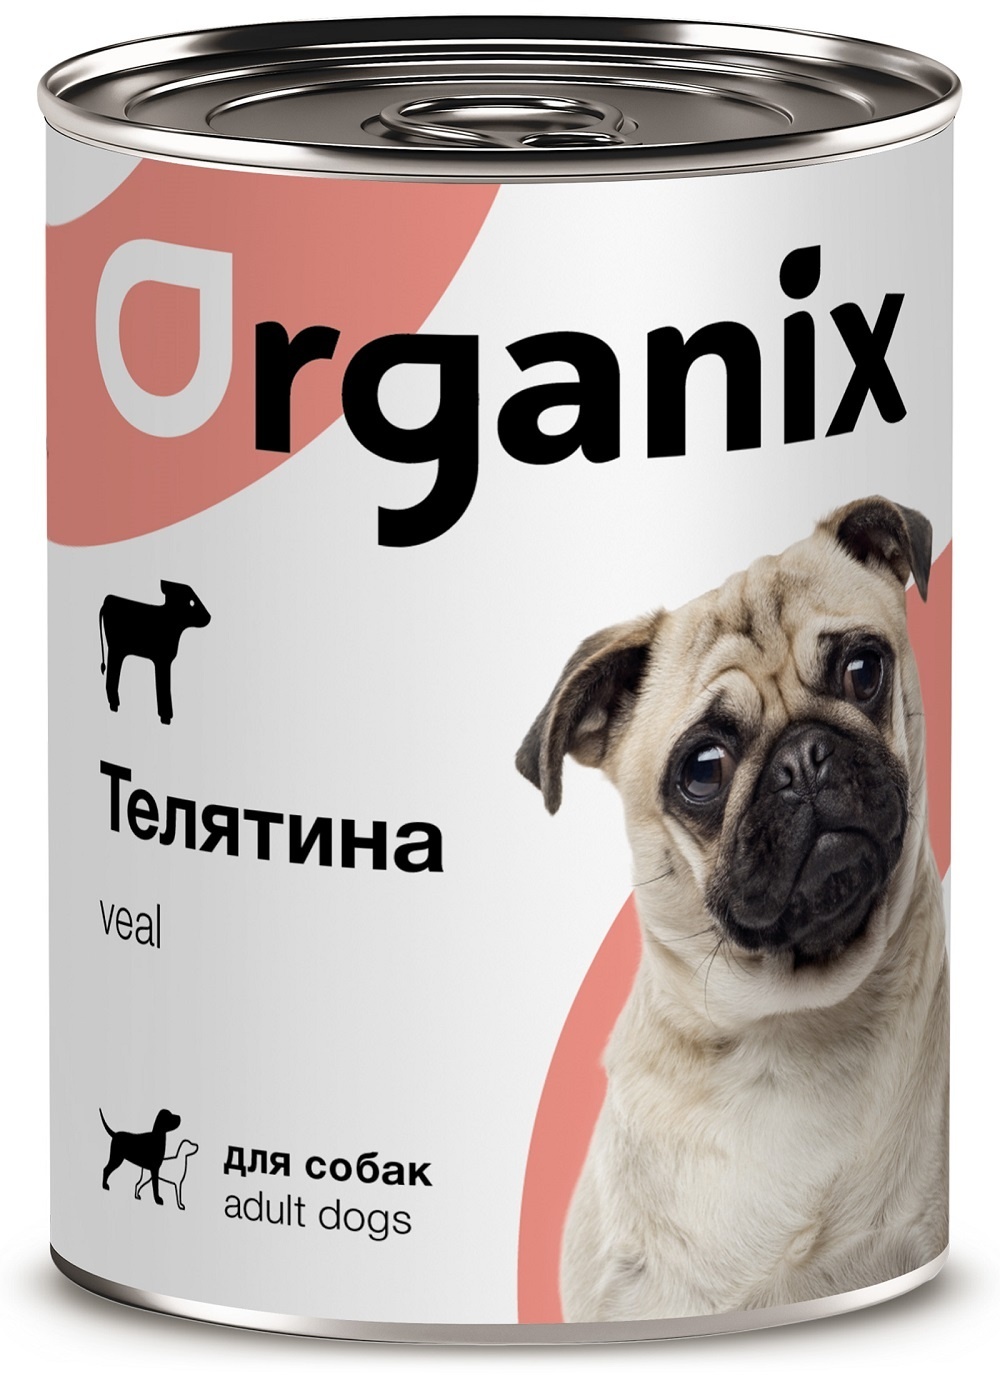 Organix консервы Organix консервы с телятиной для собак (100 г) organix консервы organix консервы для собак фрикасе из гуся с яблоками и морковкой 400 г